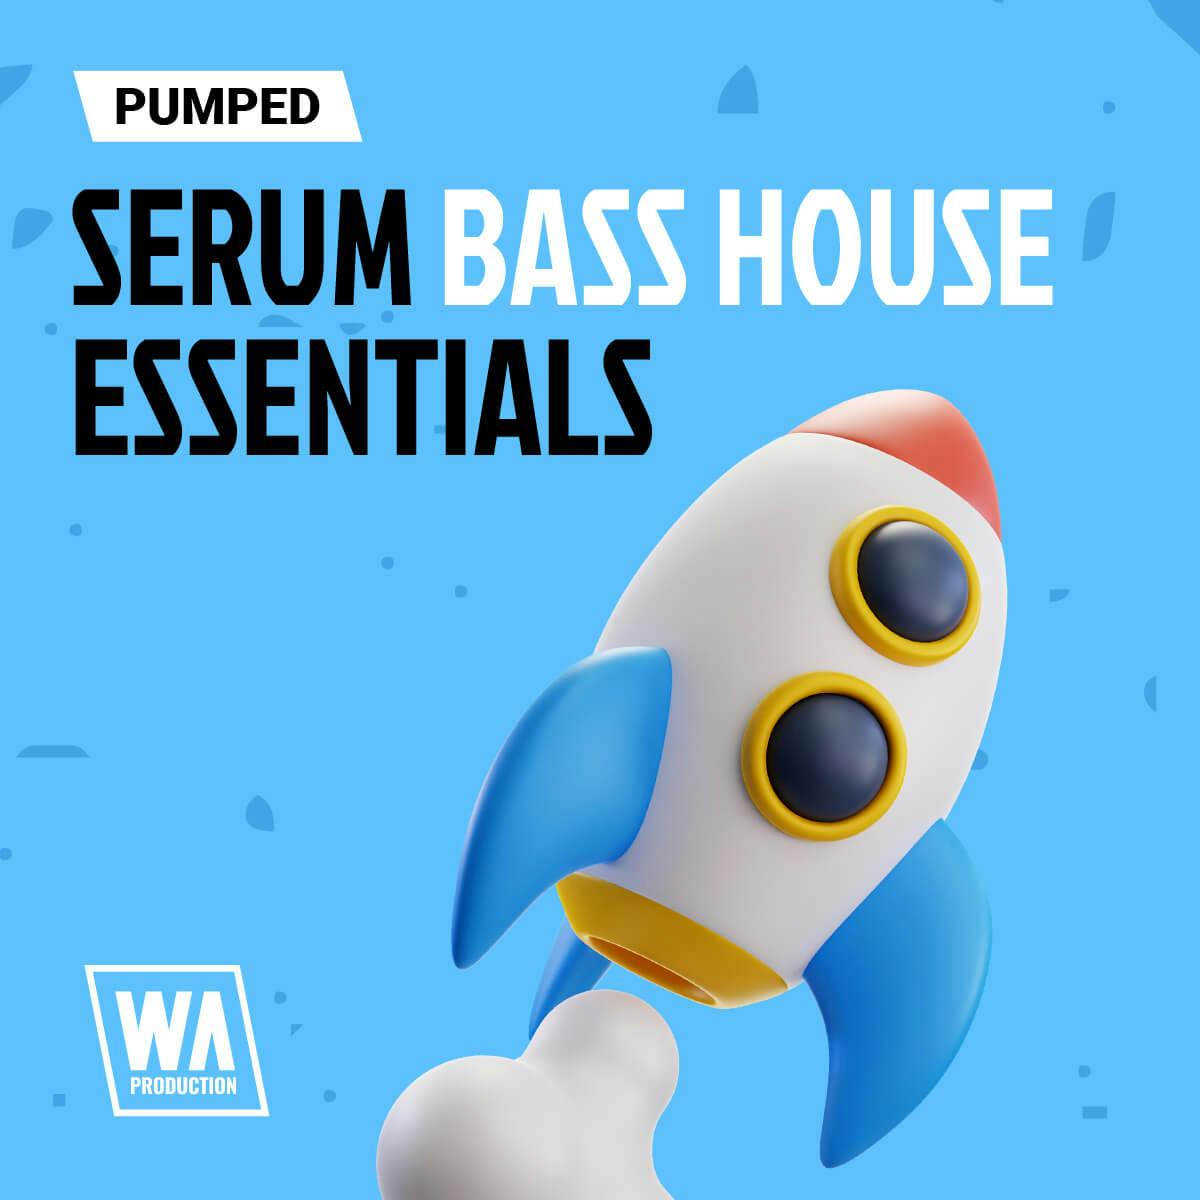 Pumped Serum Bass House Essentials